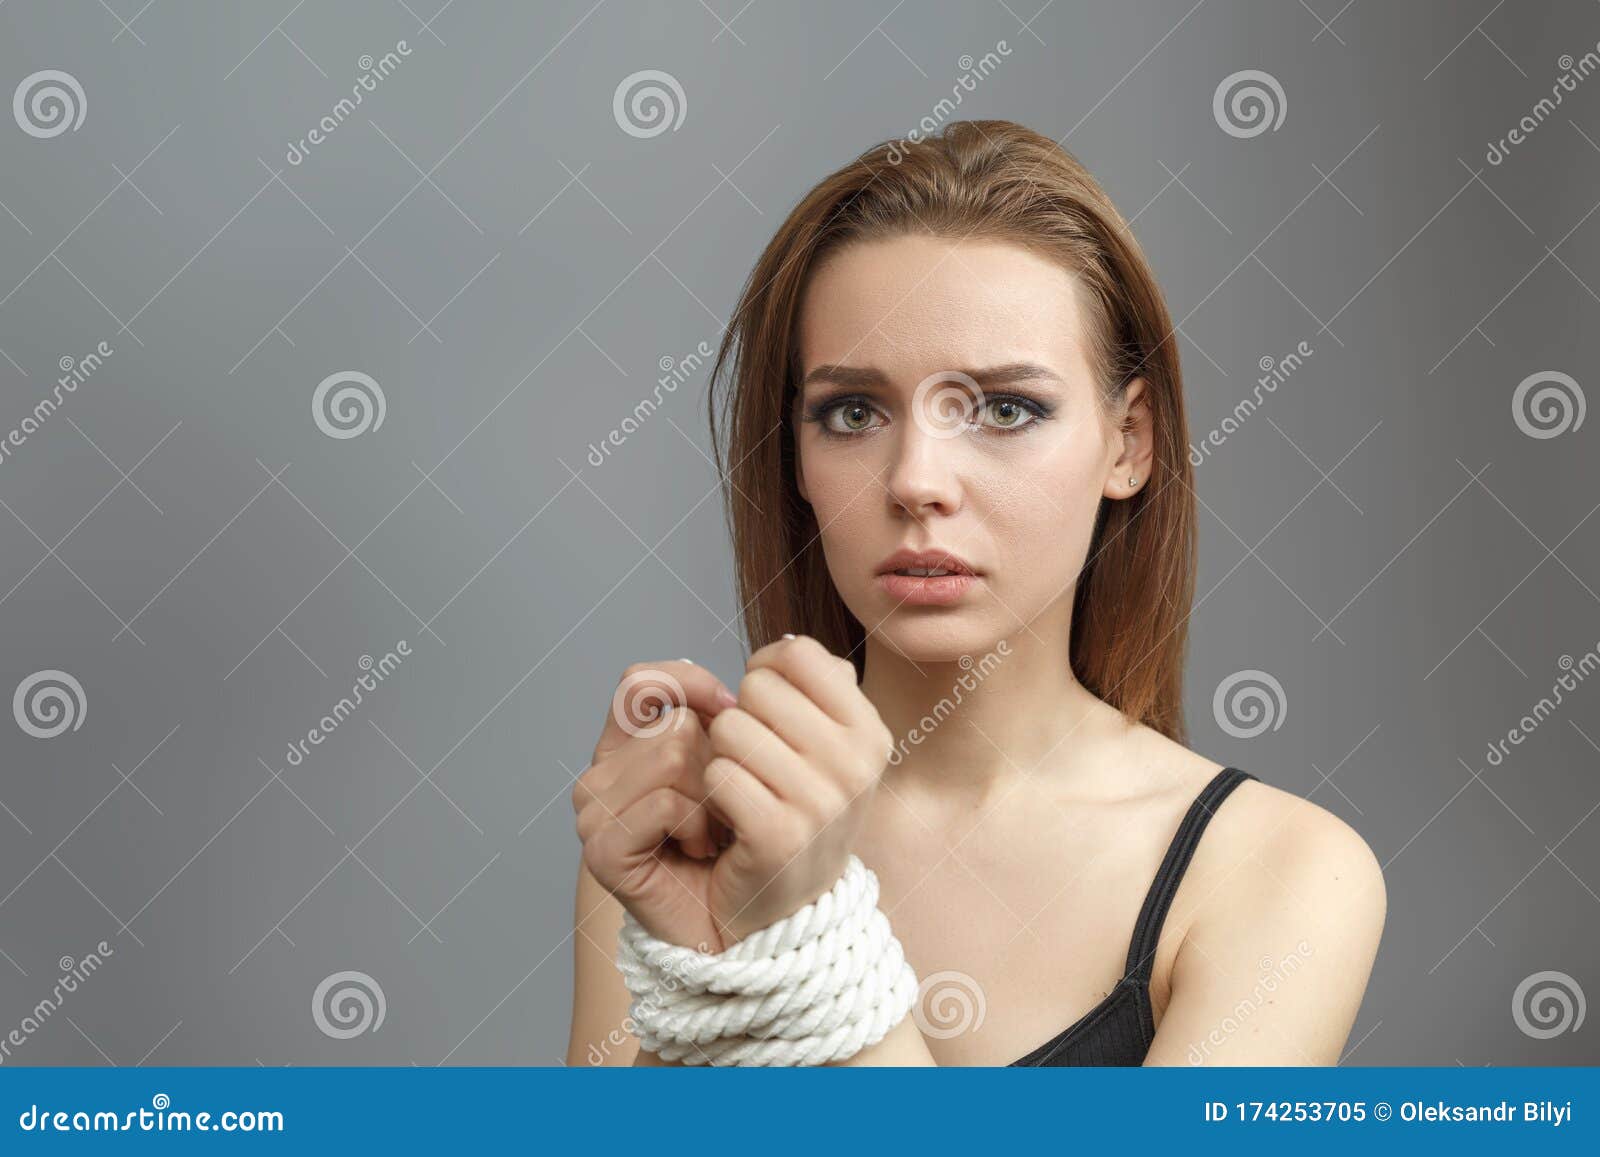 картинки со связанными руками у девушки